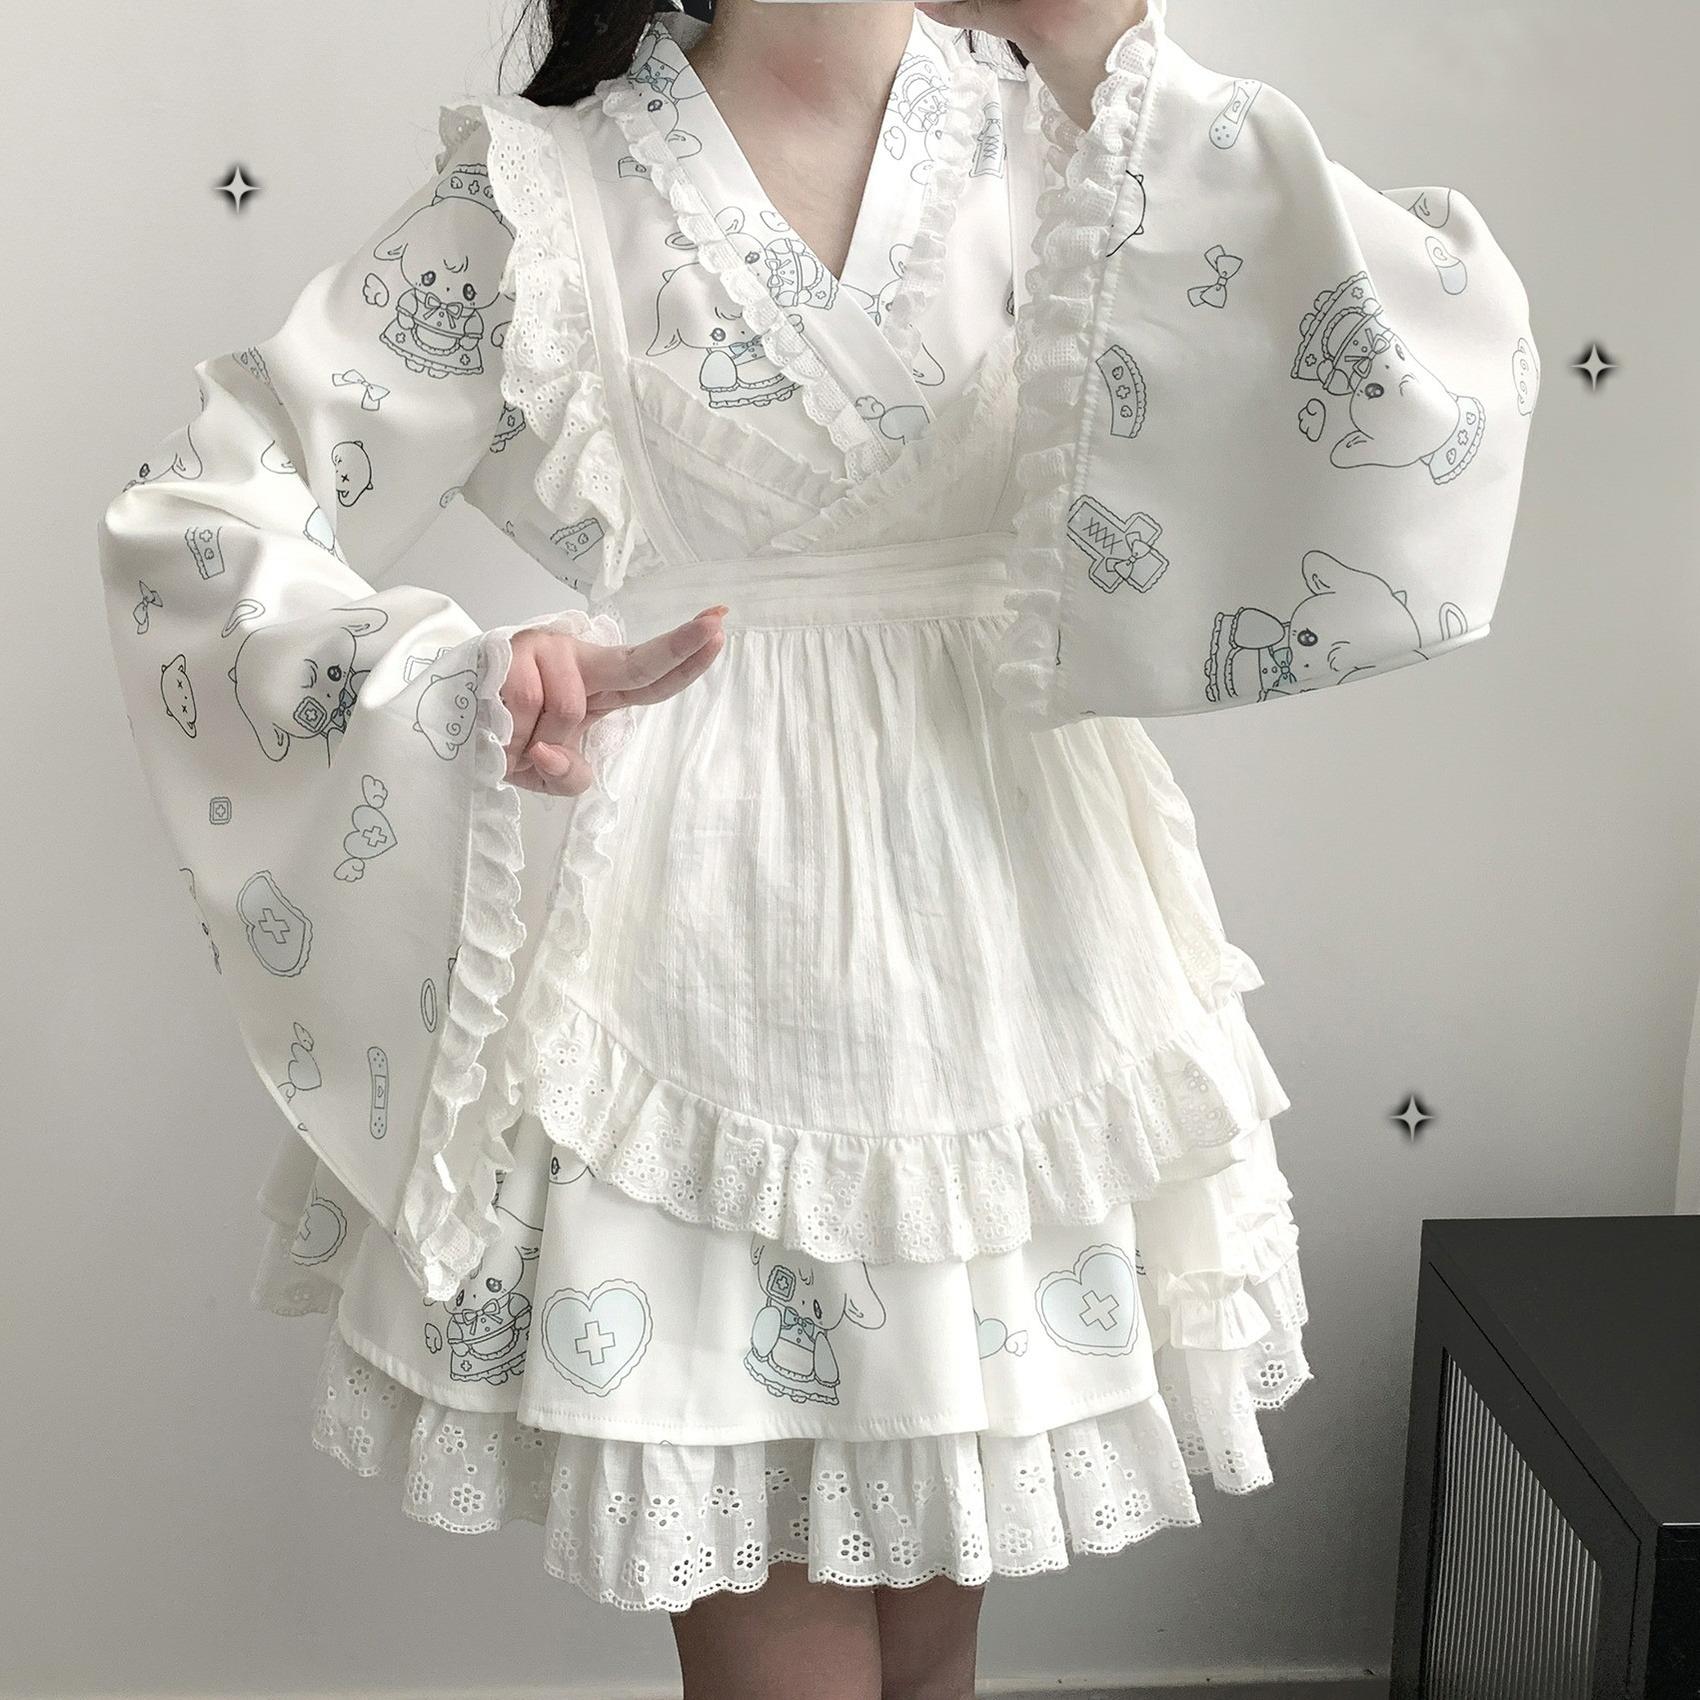 Tenshi Kaiwai Patchwork Skirt Kimono Top White Apron Three-Piece Set 36786:536944